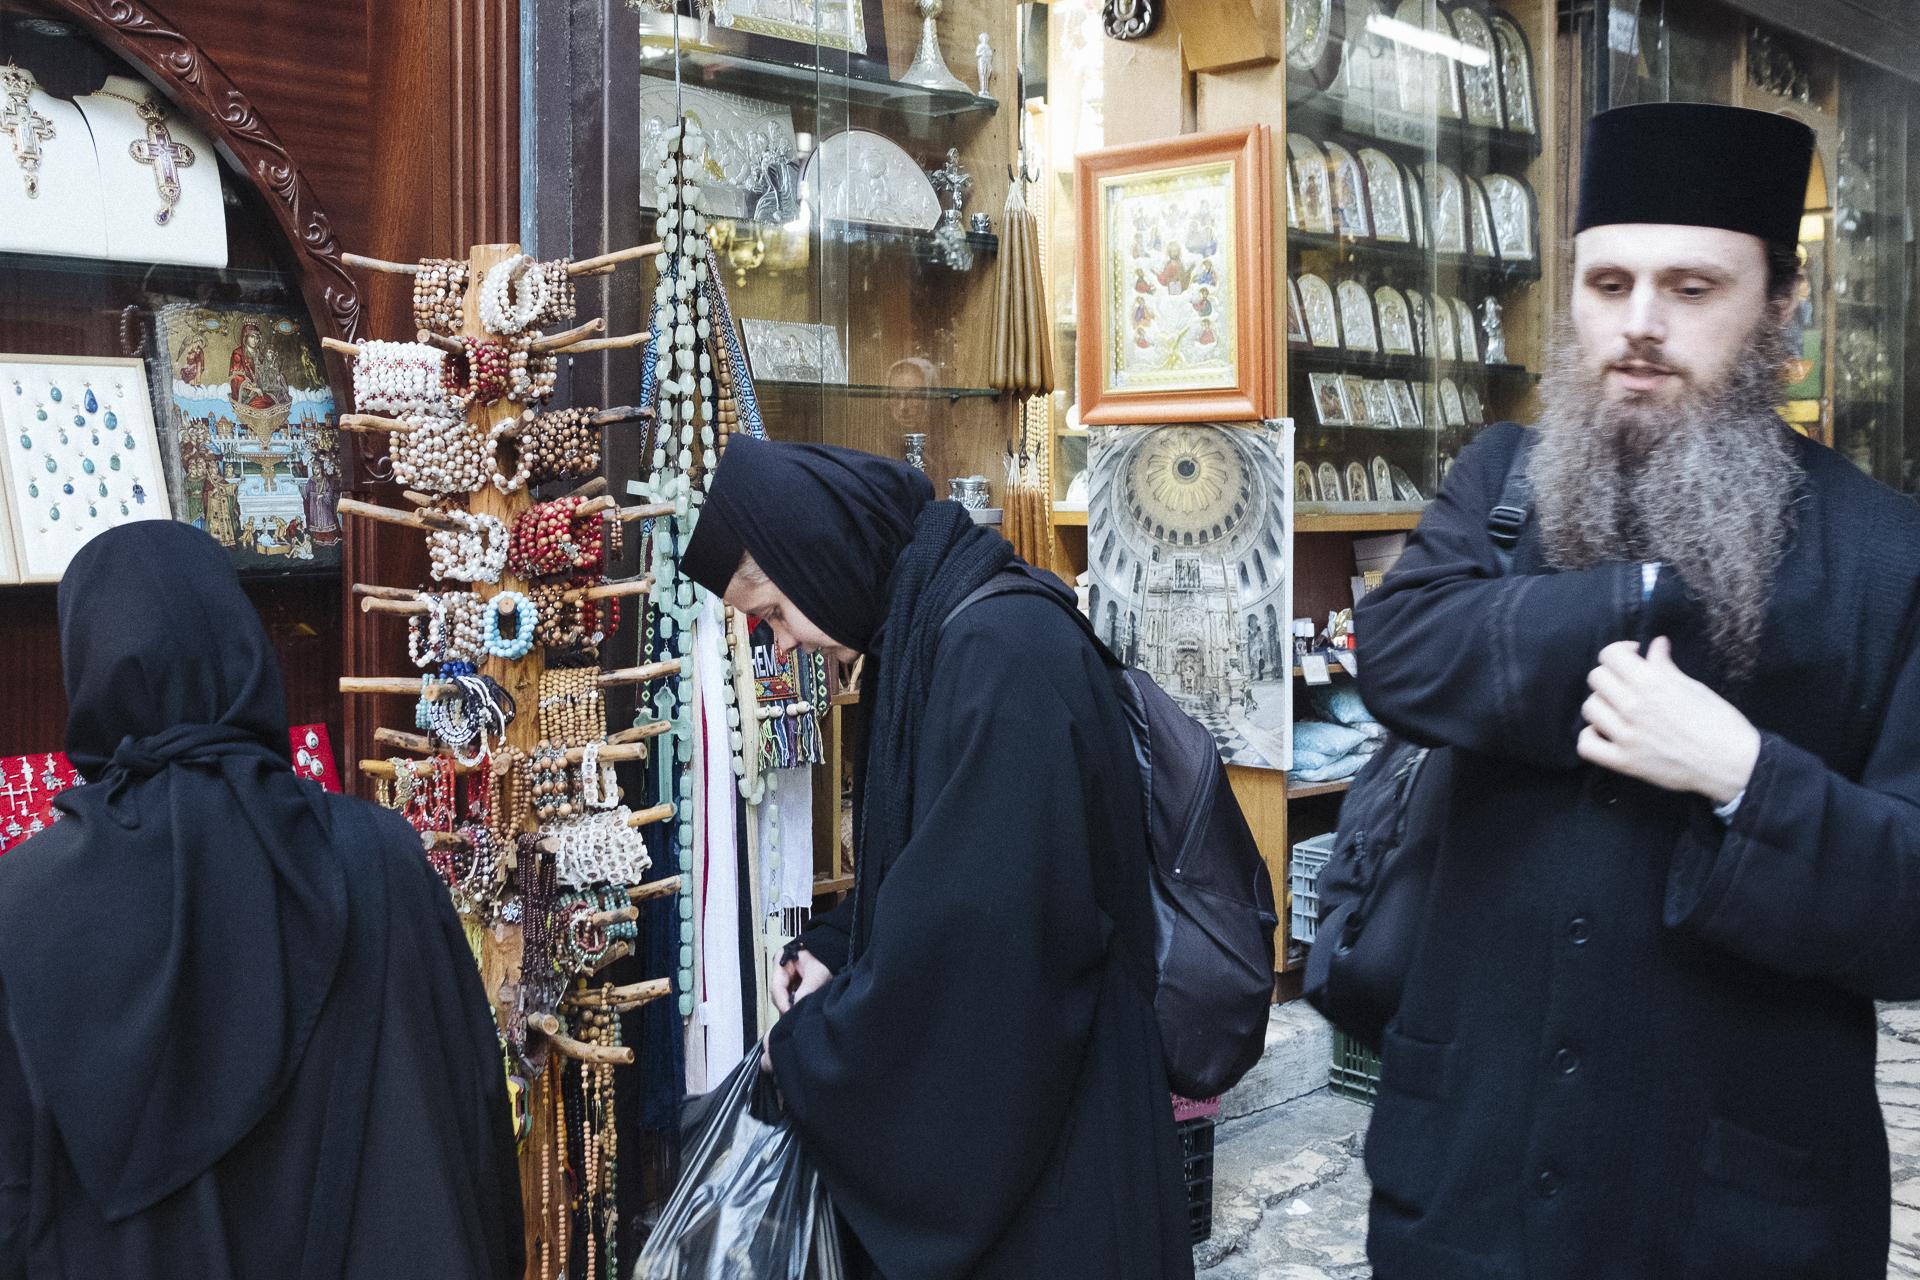 Au nom de tous les Saints - Orthodox priest and sisters in front of a religious shop...